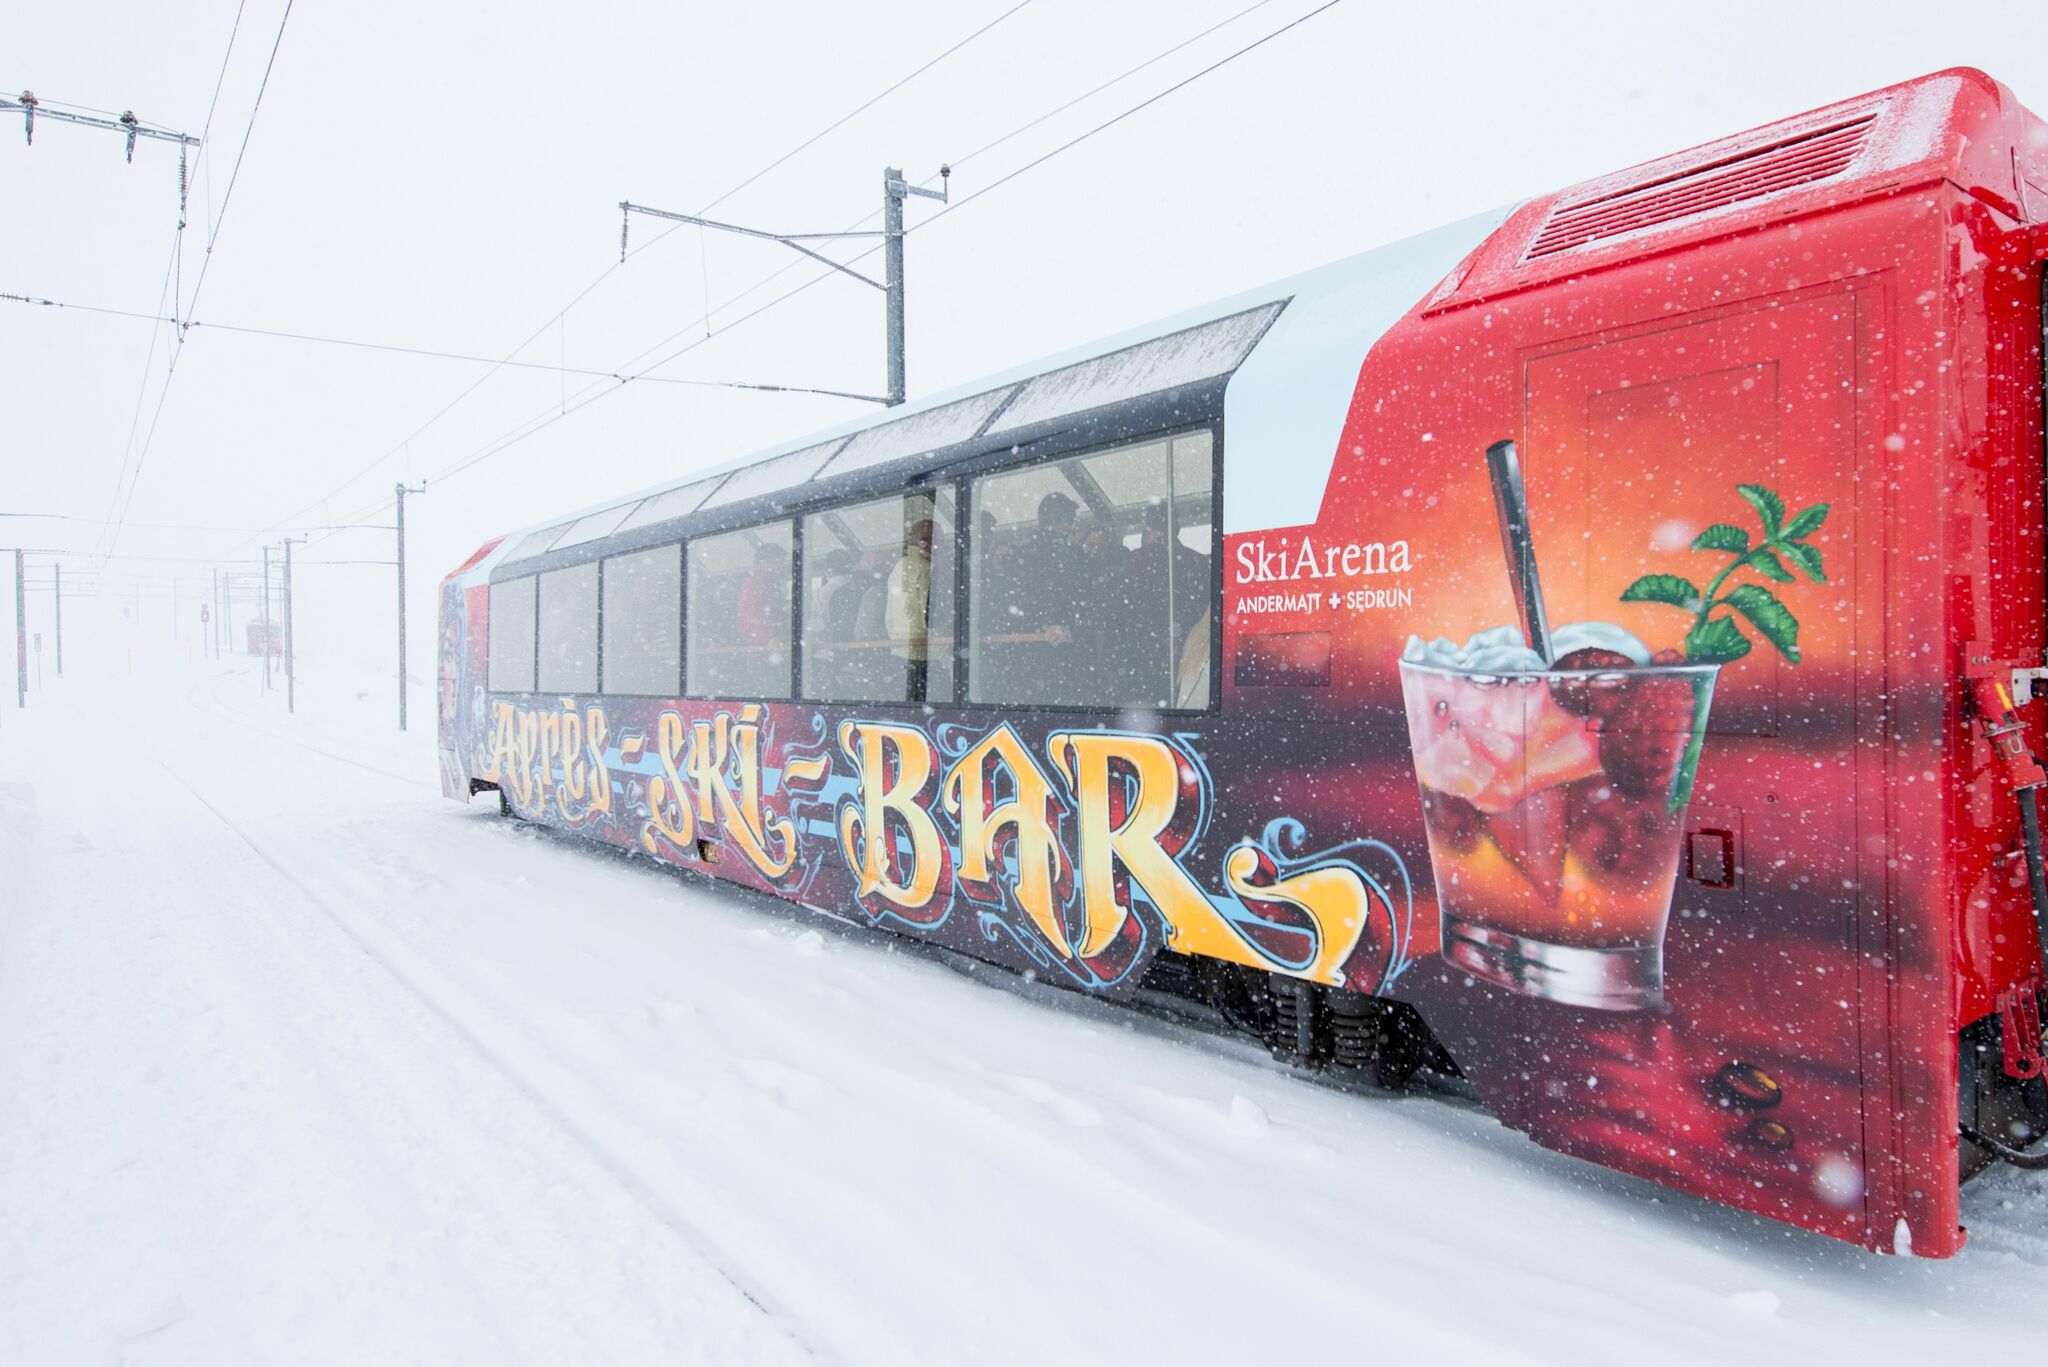 Passend zum Skifahren und dem heurigen Winter: Aprs-Ski-Bar-Wagen